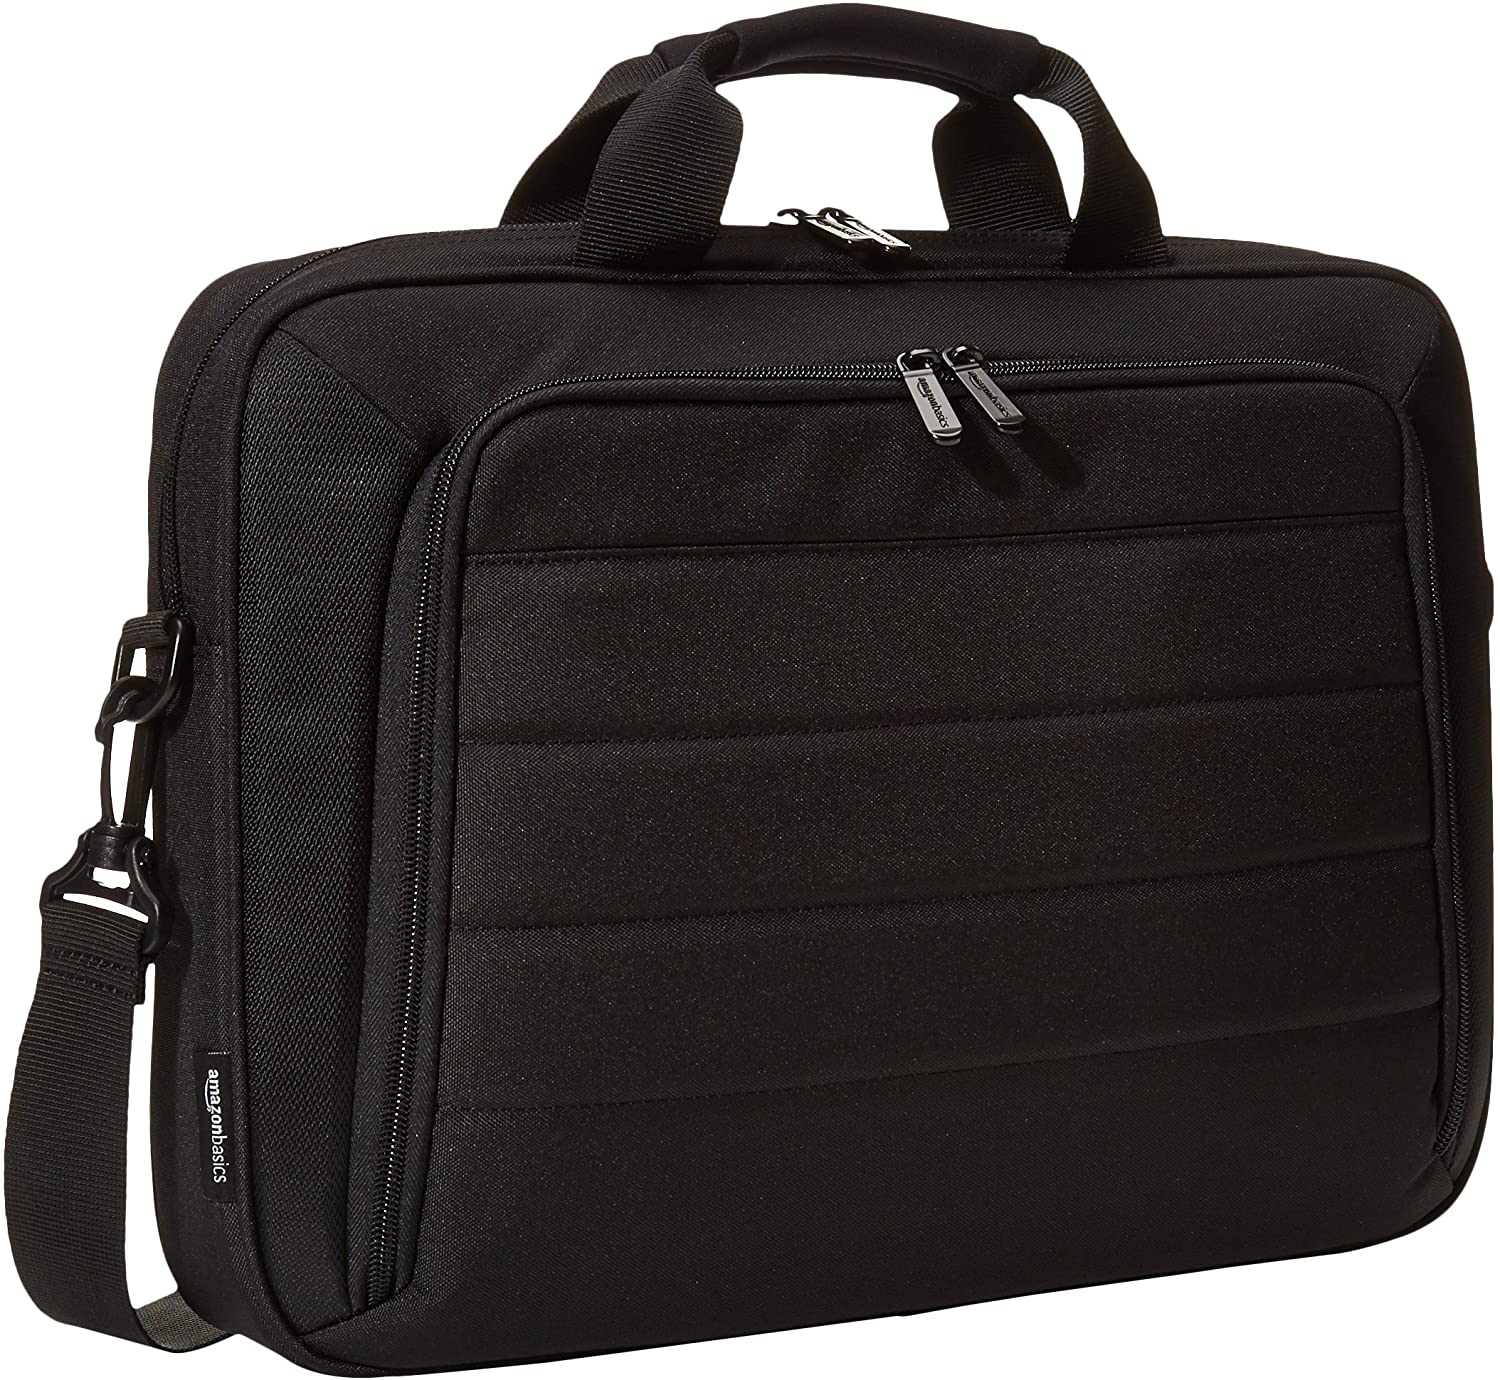 Amazon Basics laptop bag. 